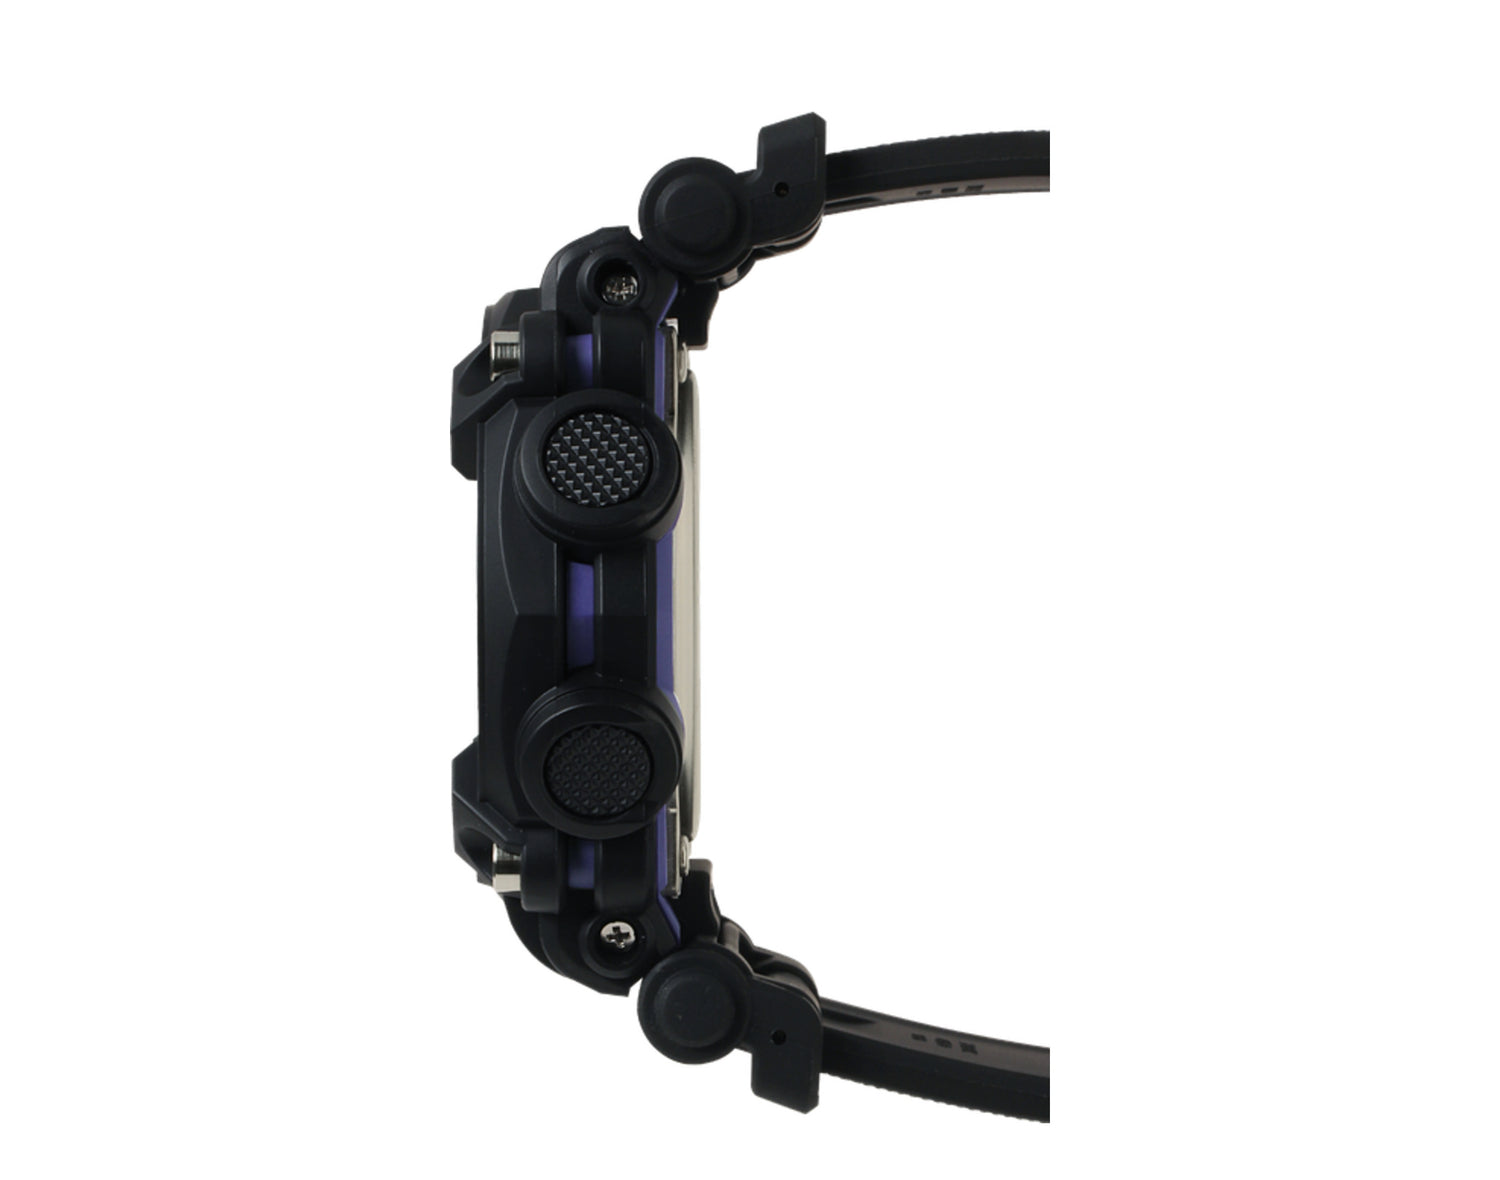 Casio G-Shock GA900AS Analog-Digital Resin Watch